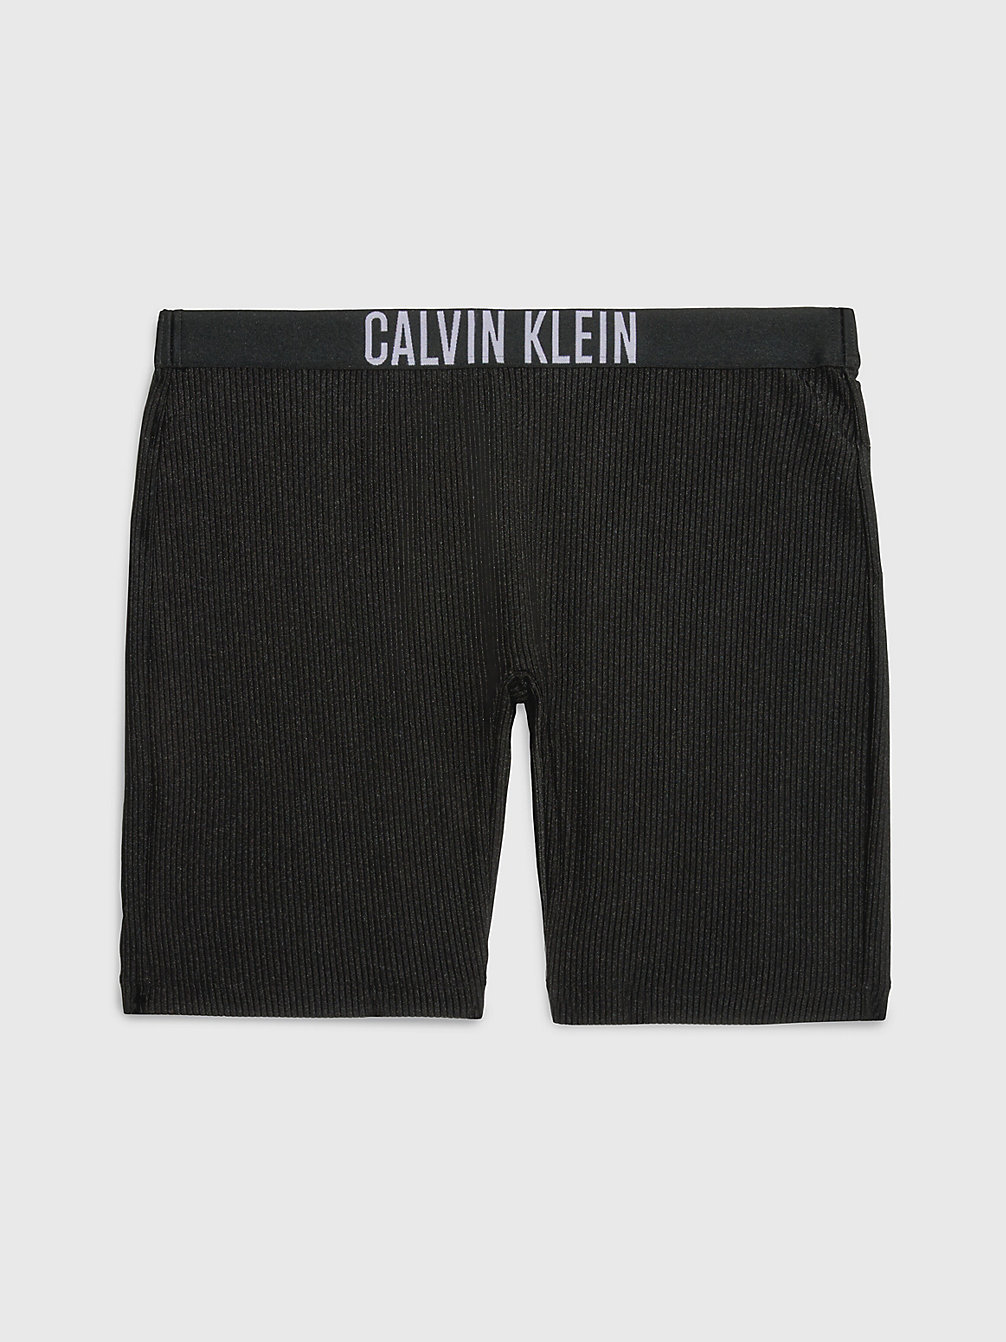 PVH BLACK Badeshorts – Intense Power undefined Damen Calvin Klein